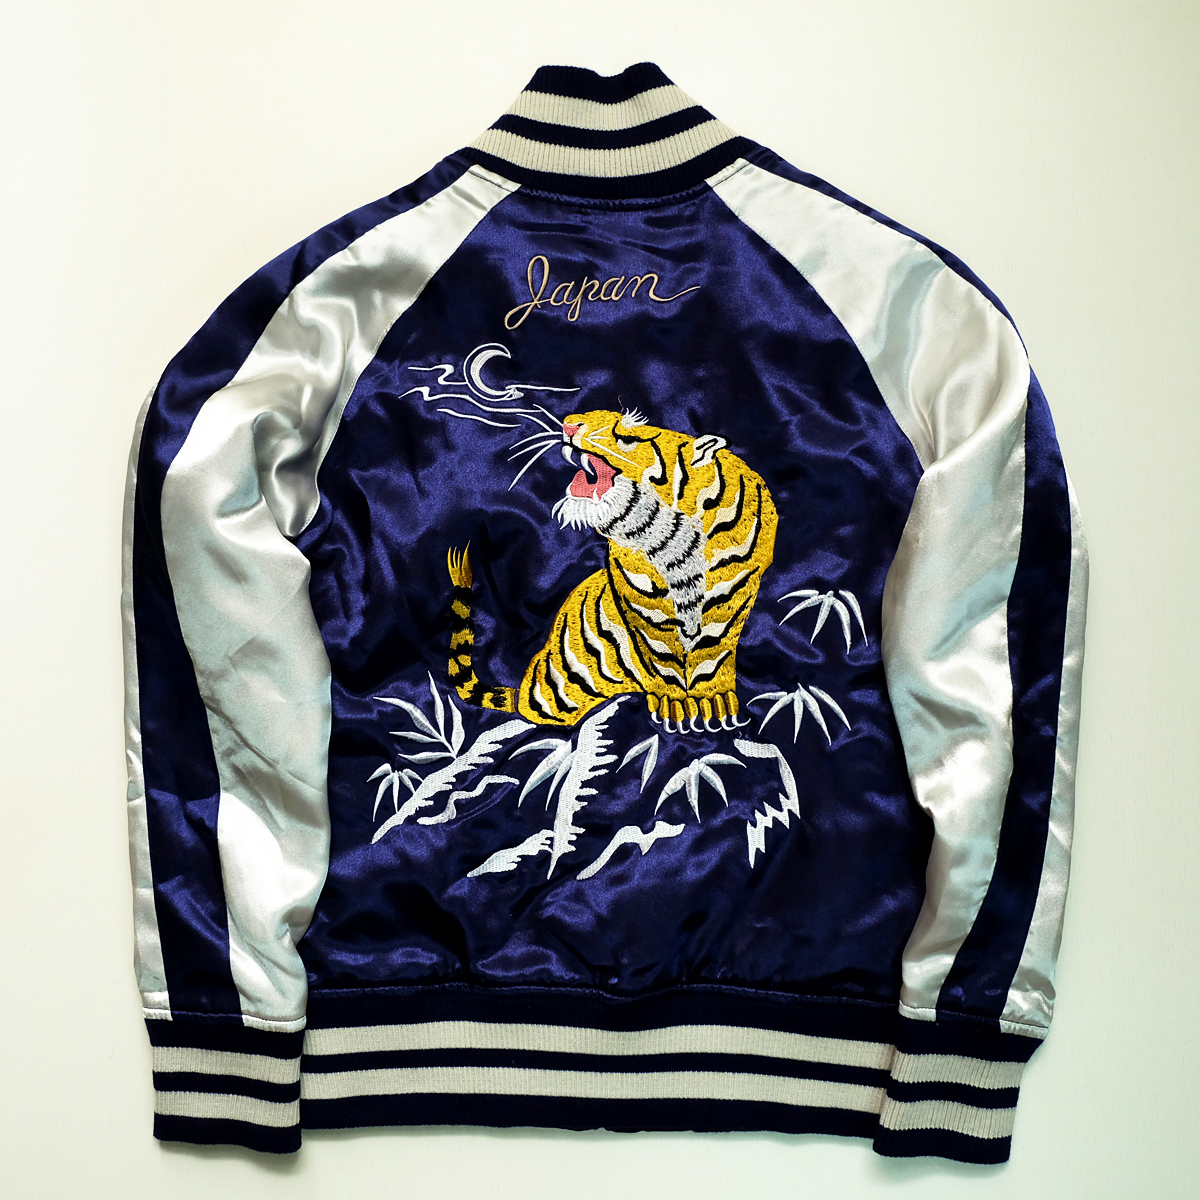 Maker of Jacket Bomber Jackets Vintage Japan Royal Blue Tiger Embroidery